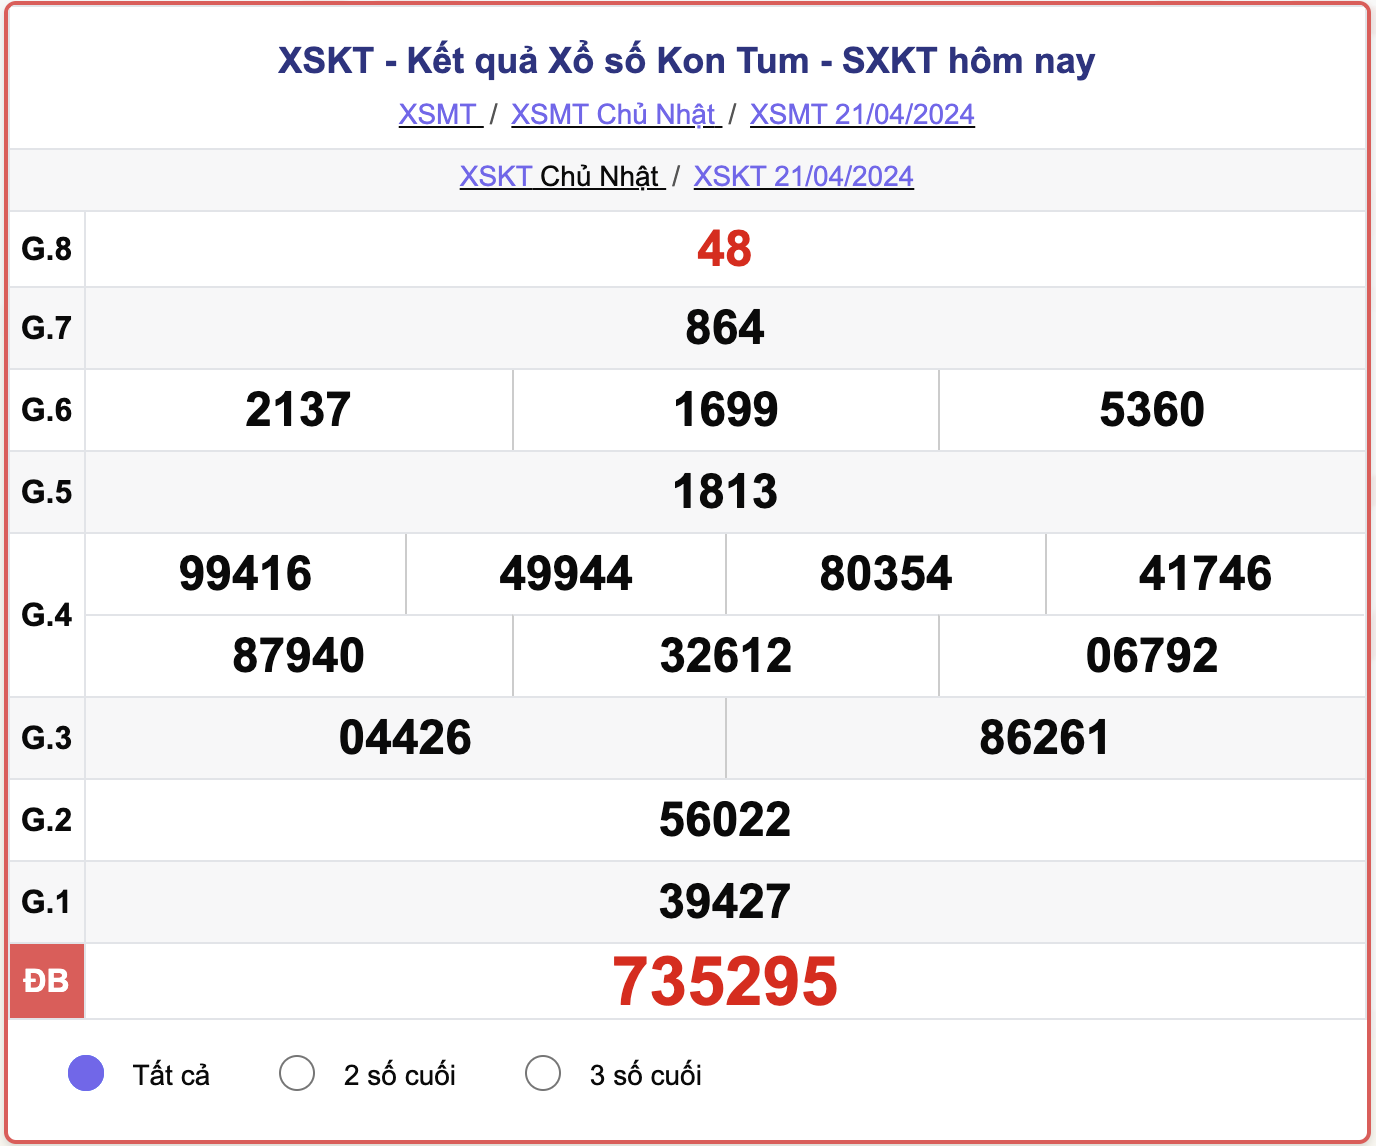 XSKT Chủ nhật, kết quả xổ số Kon Tum ngày 21/4/2024.